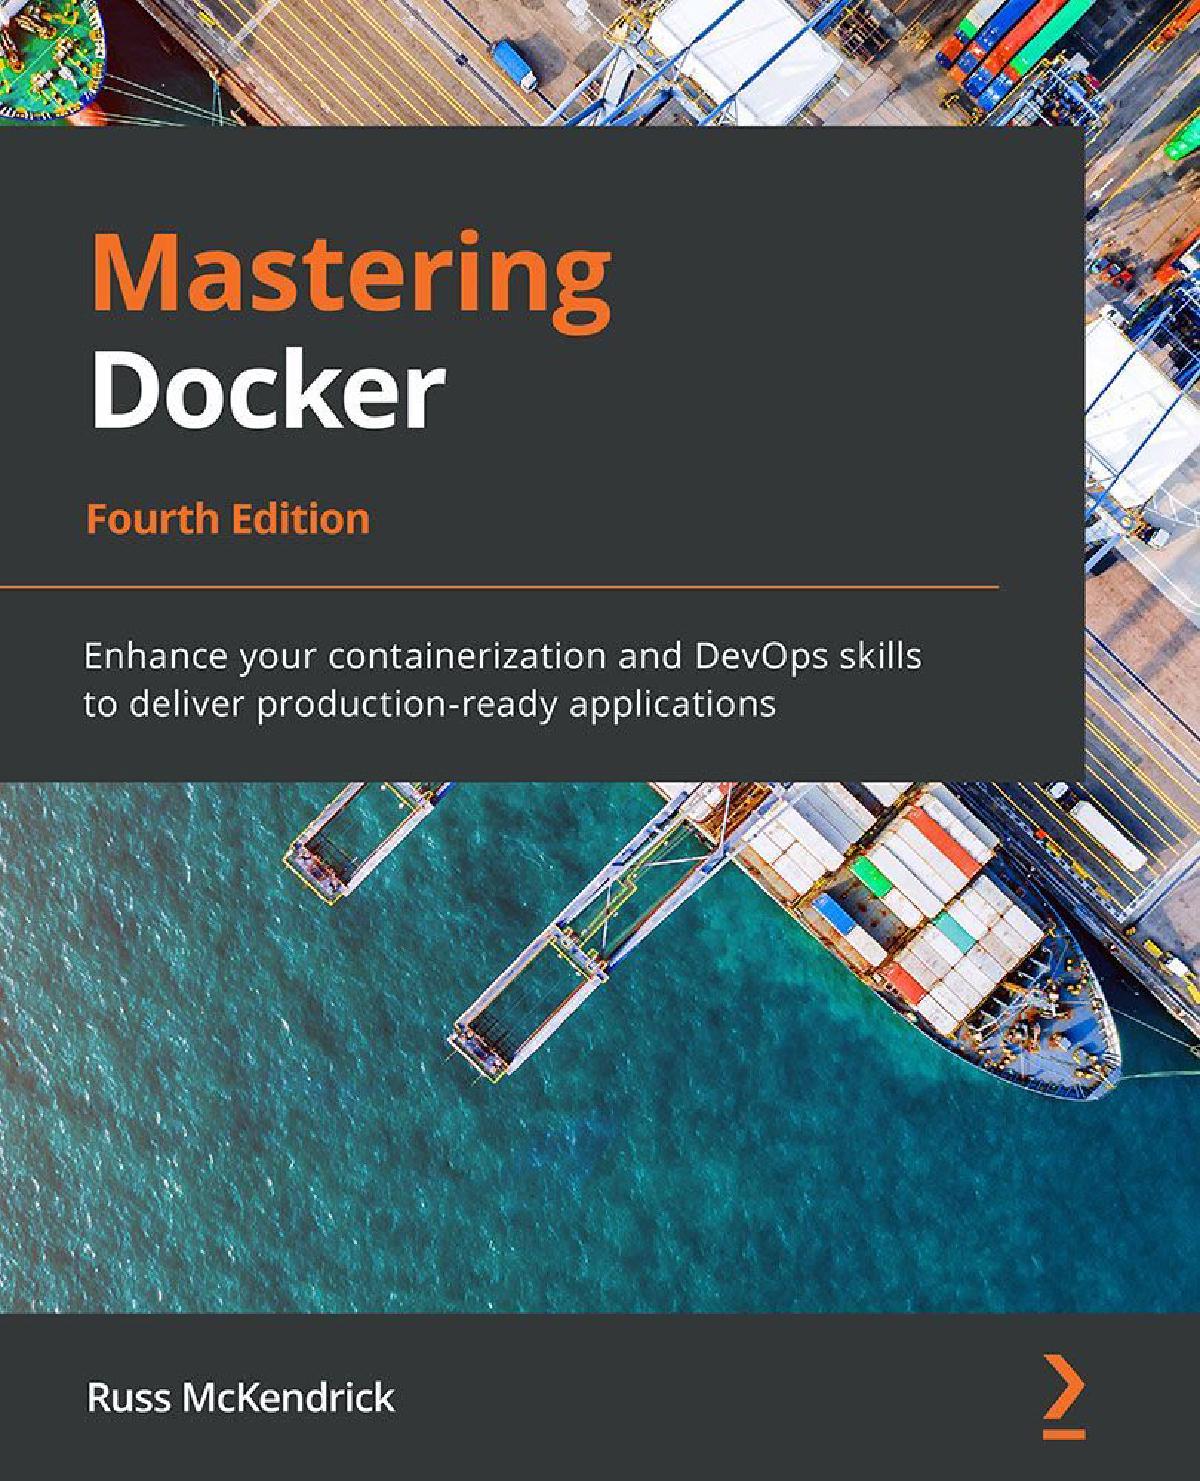 Mastering Docker - Forth Edition